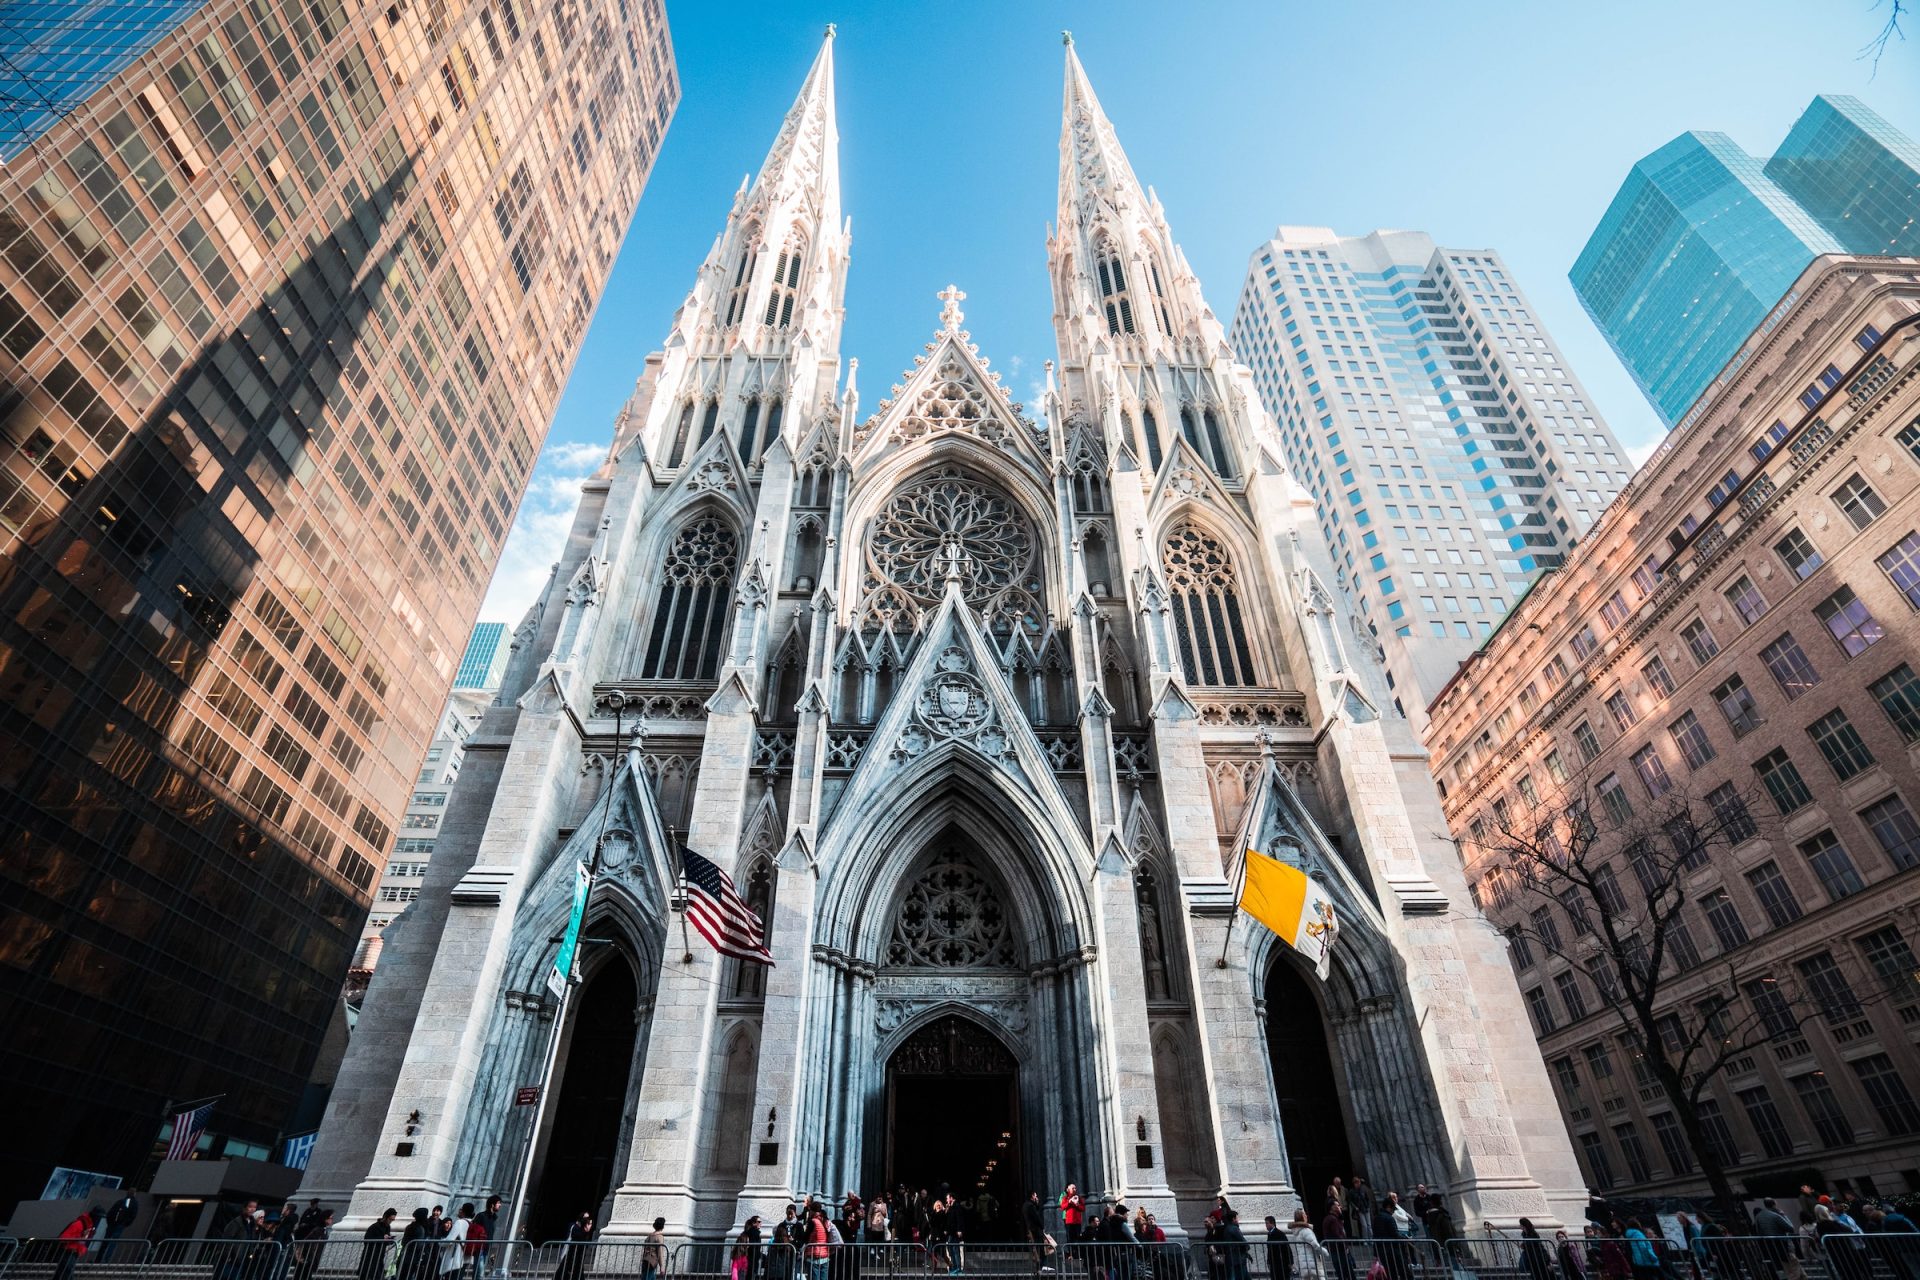 St. Patrick's Cathedral, New York, NY, USA